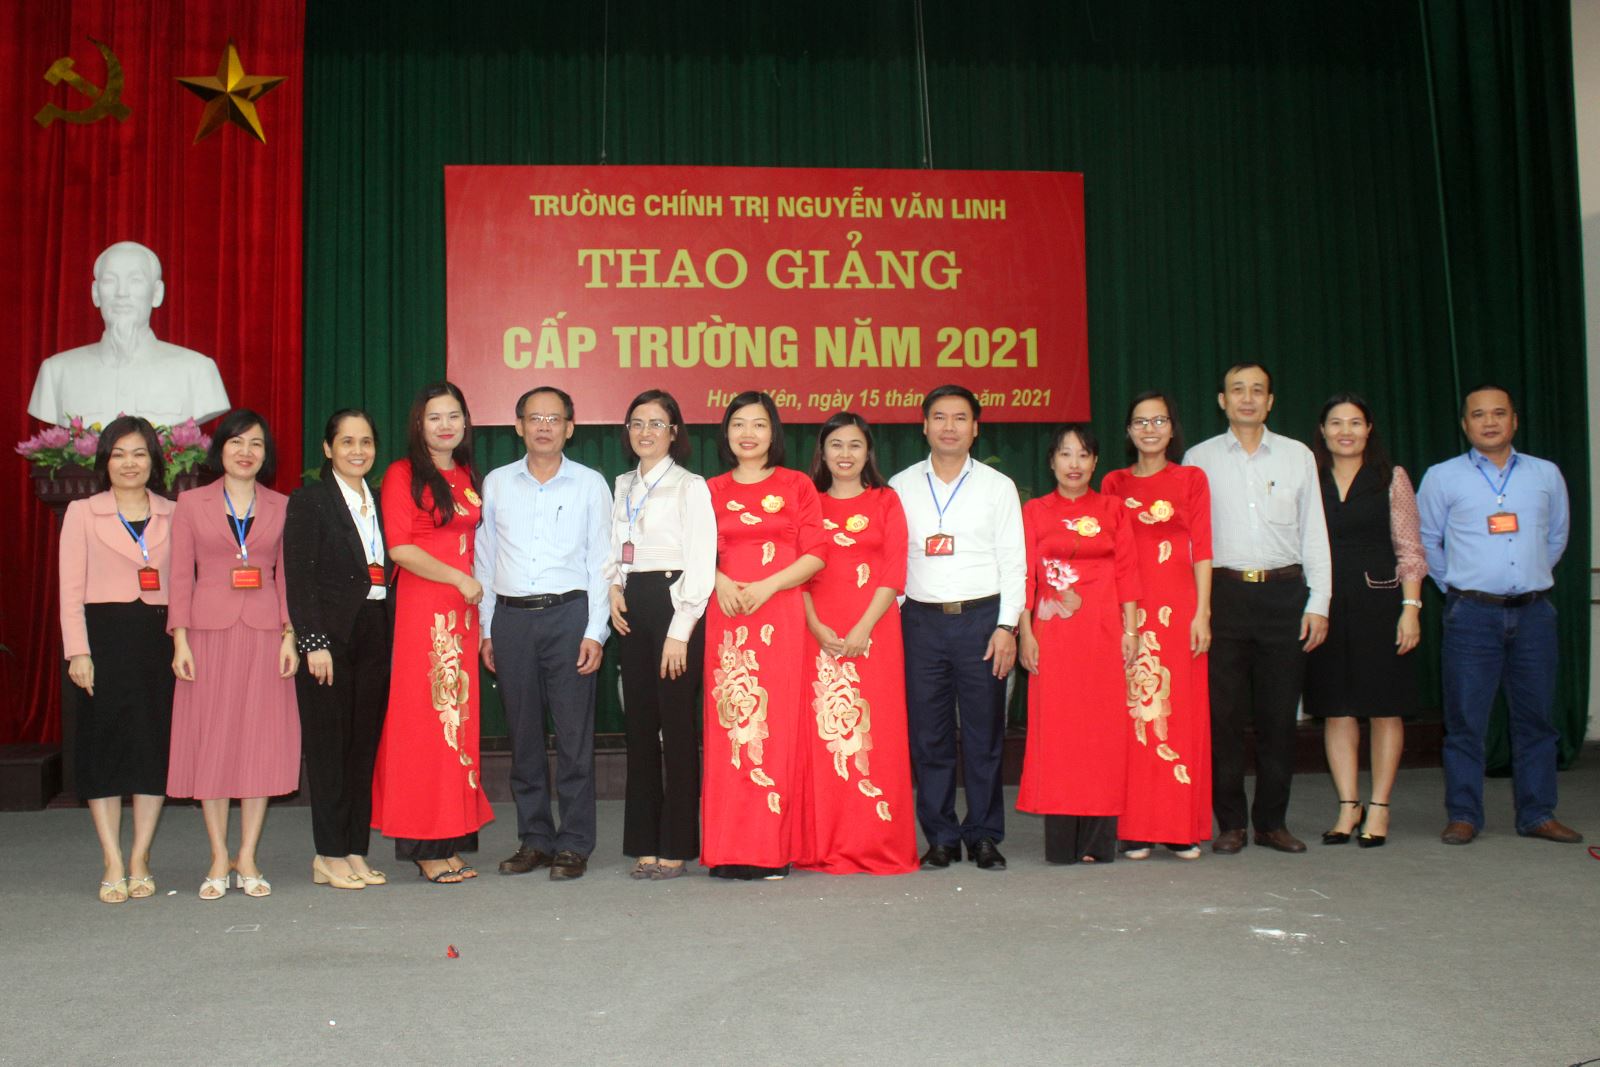 Một số giải pháp nâng cao trình độ chuyên môn, kỹ năng nghiệp vụ cho đội ngũ giảng viên Mác-Lênin tại Trường Chính trị Nguyễn Văn Linh tỉnh Hưng Yên hiện nay